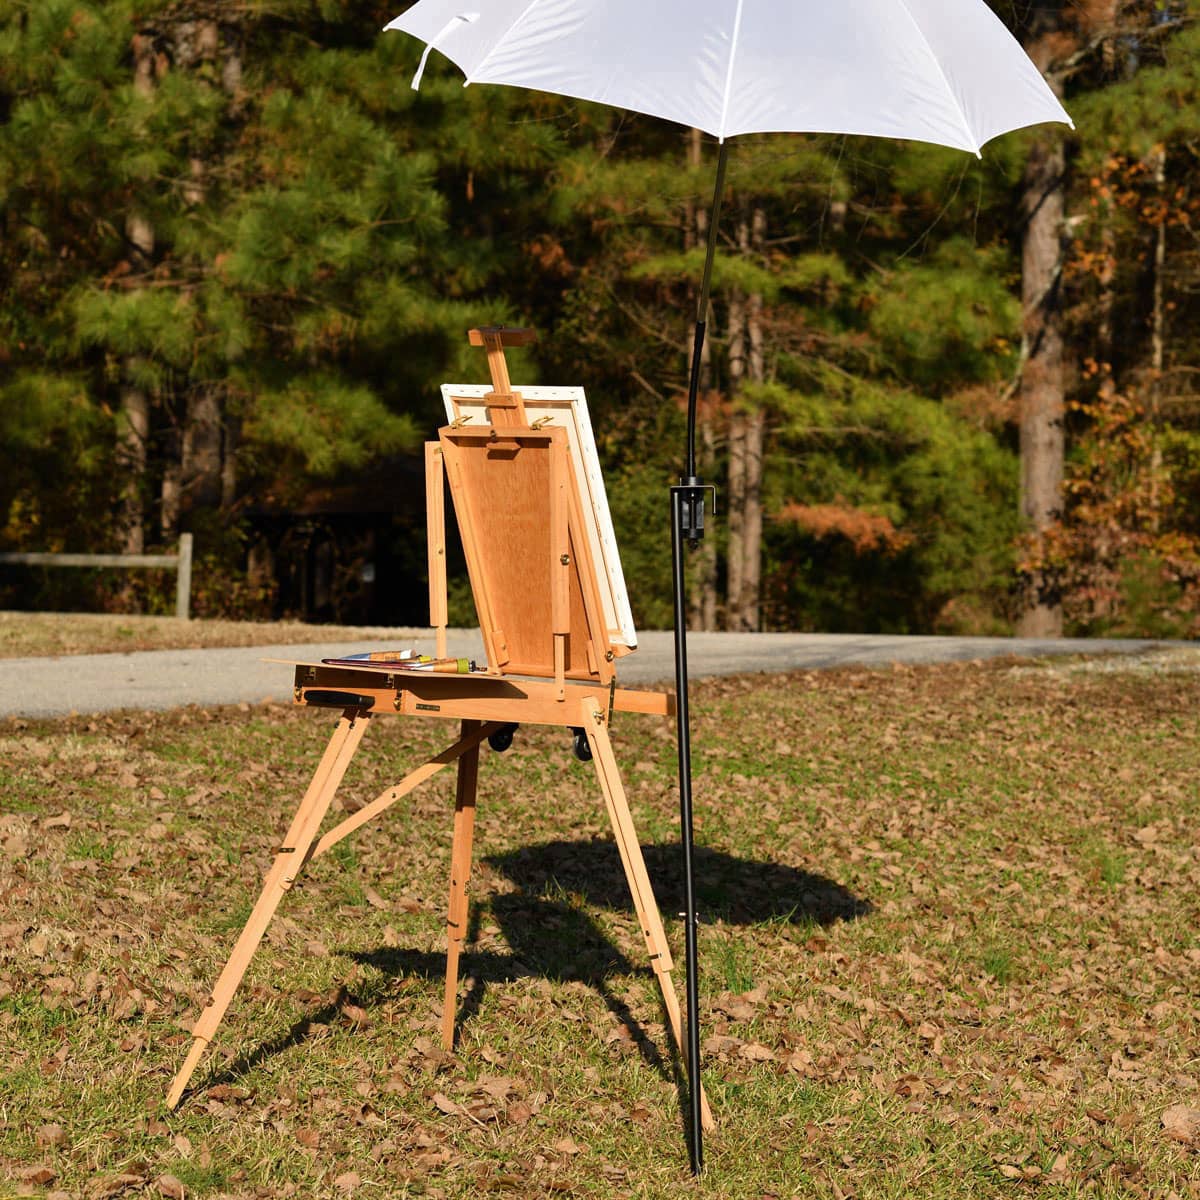 Plein Air Art Supplies: Choosing the Right Paint Box - OutdoorPainter